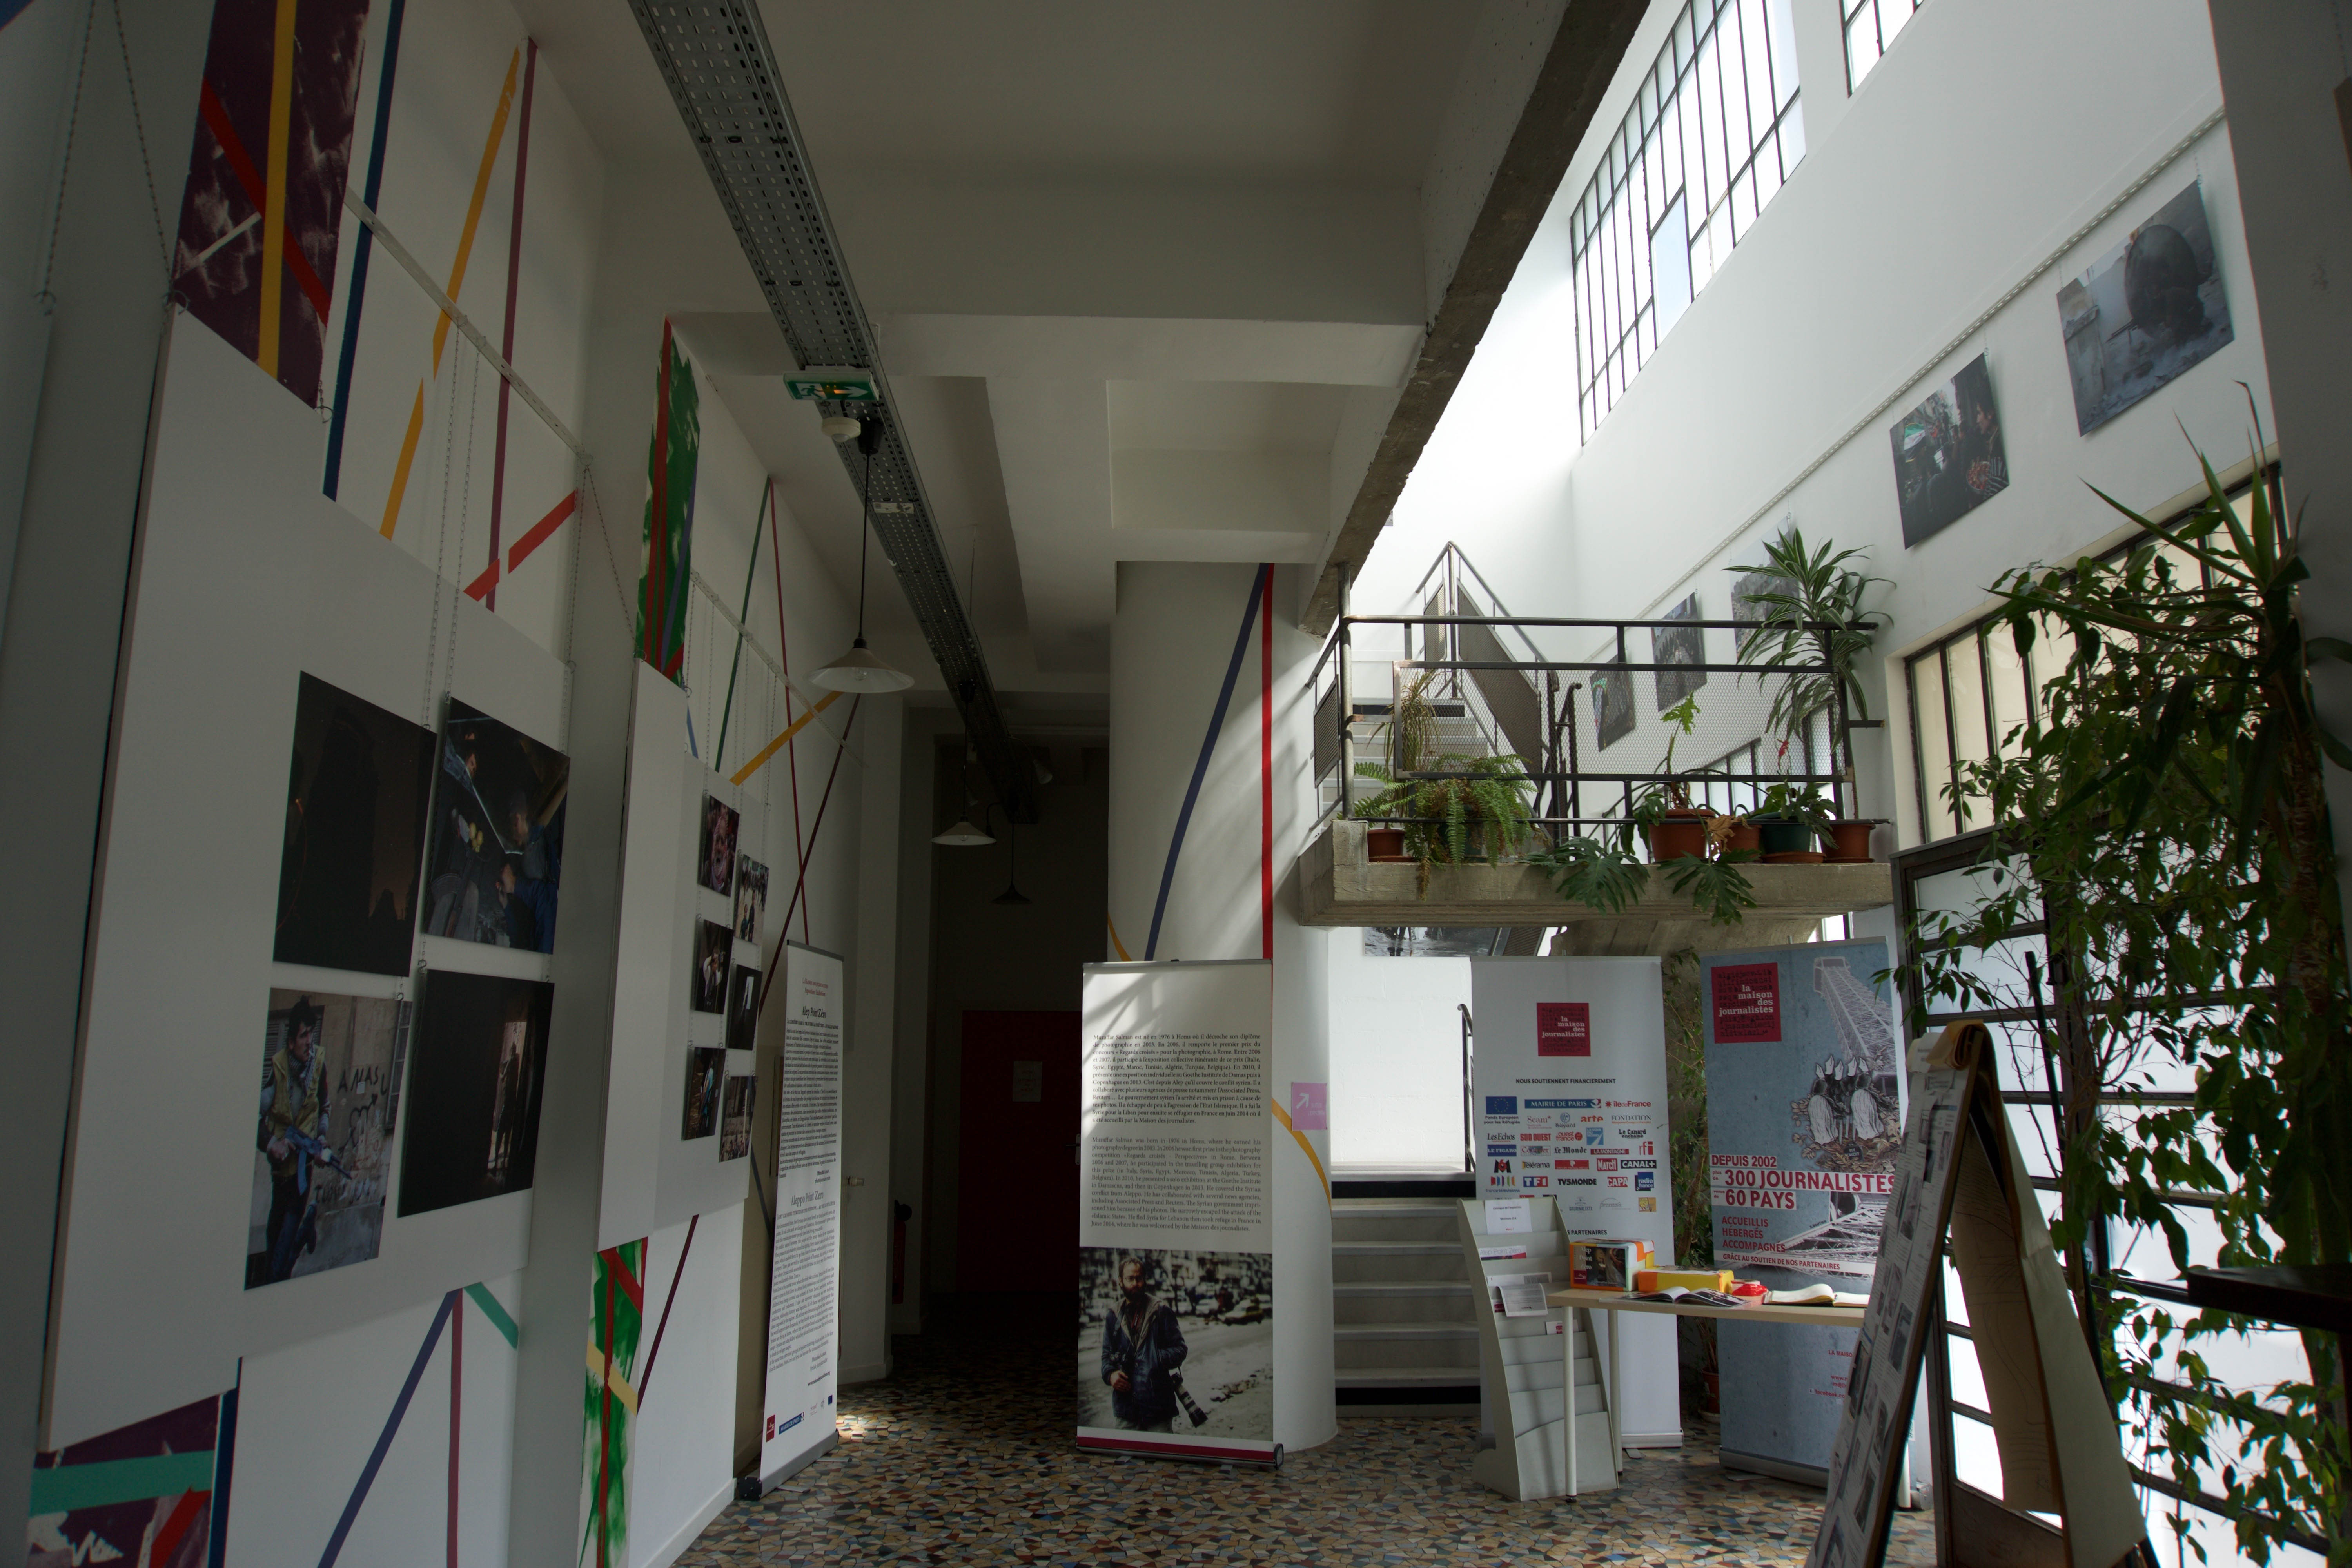 Le hall de la Maison, en ce moment occupé par l’exposition « Alep Point Zéro » du photojournaliste syrien Muzaffar Salman. Crédit Lucas Chedeville